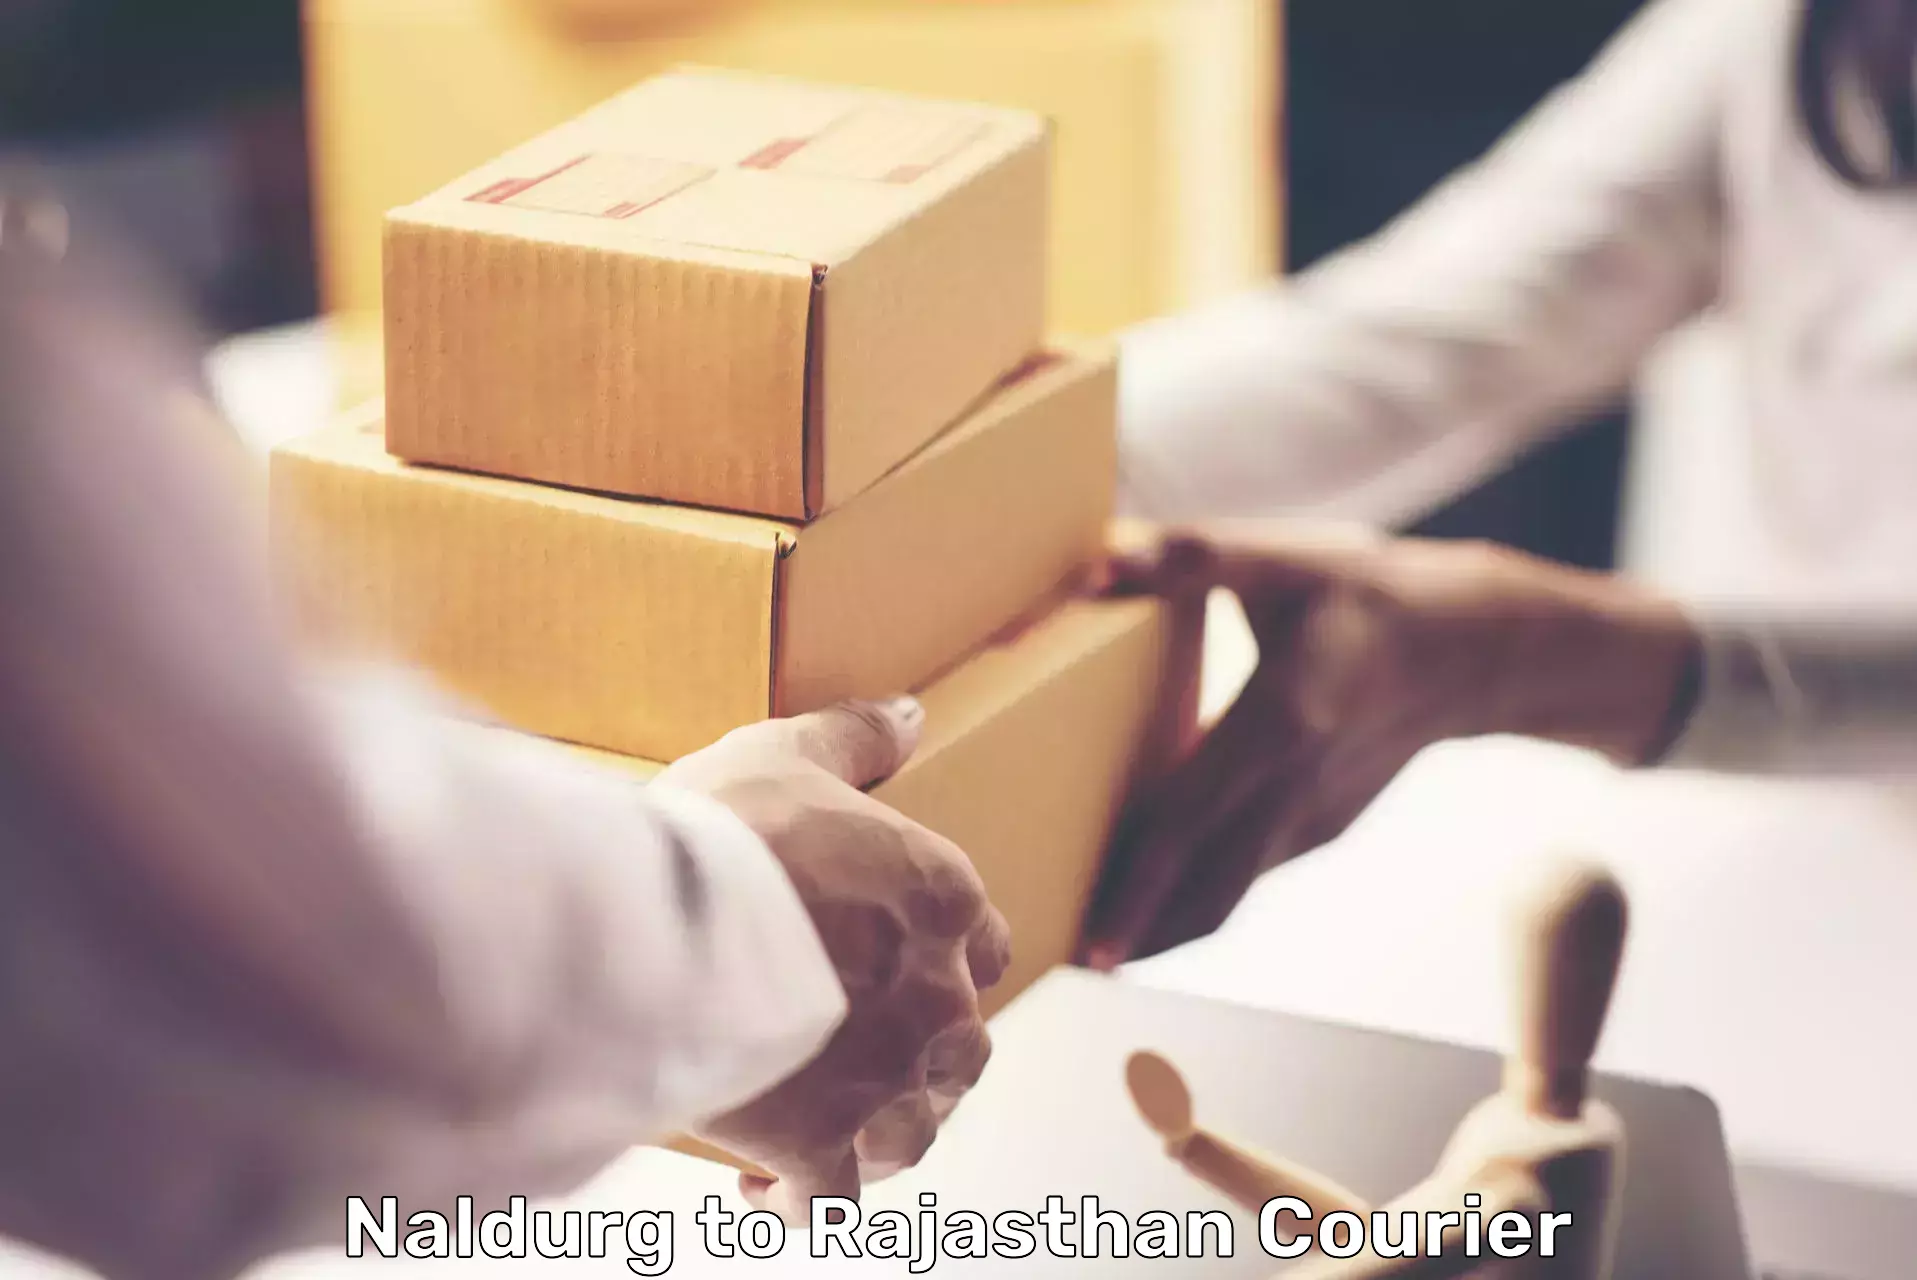 Nationwide parcel services Naldurg to Bhinder